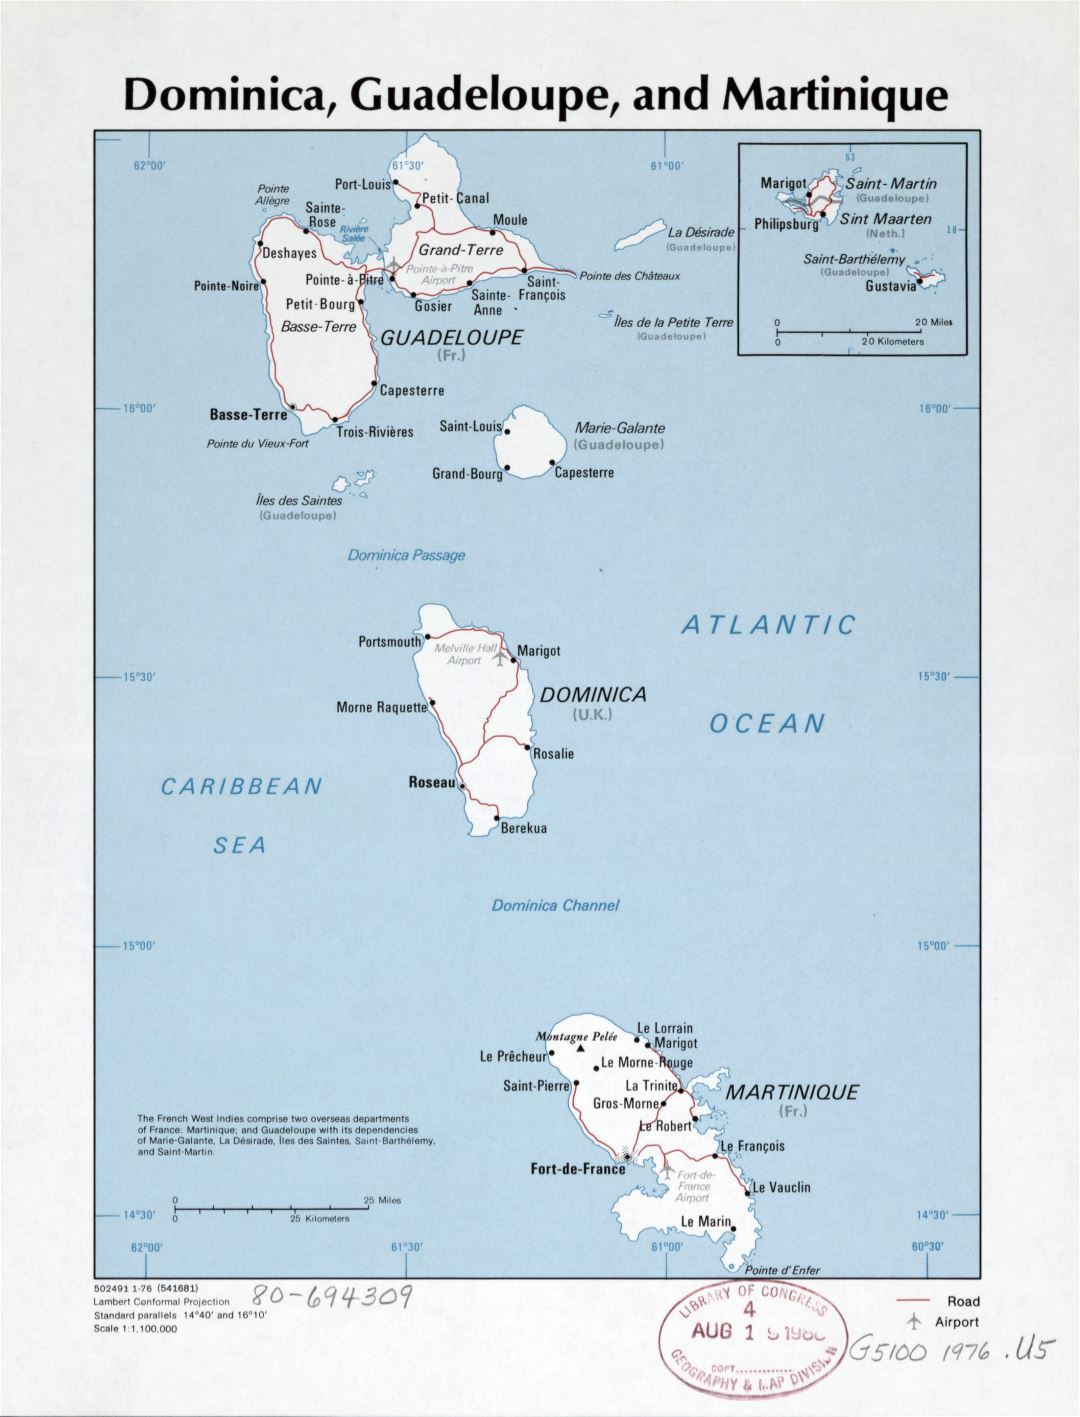 Большая детальная политическая карта Доминики, Гваделупы и Мартиники с дорогами, крупными городами и аэропортами - 1976